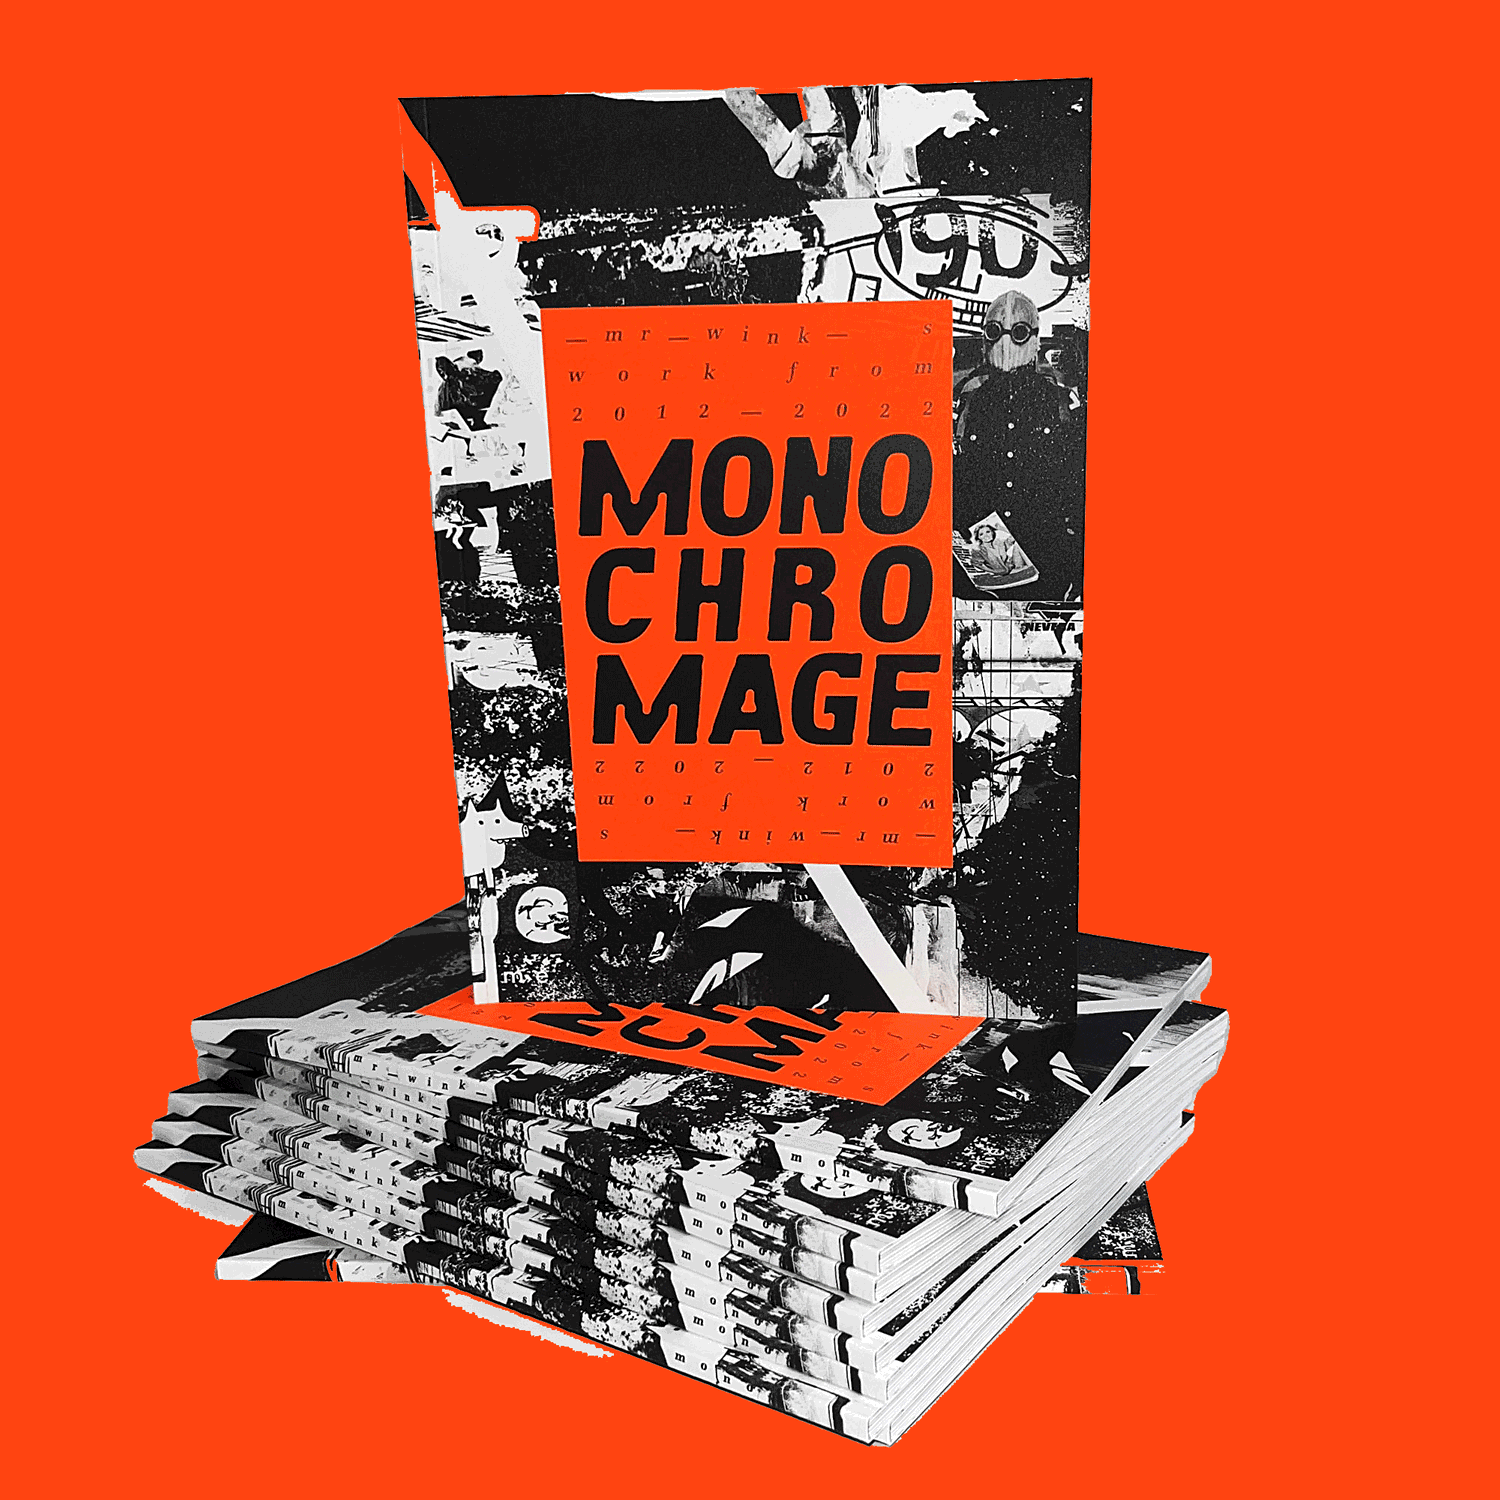 Aufgabenstellung: Buch & Editorial Design, Grafikdesign | Kunde: Rocket & Wink Supermarket | Jahr: 2022 | Projekt: Mono chro mage. Artbook.